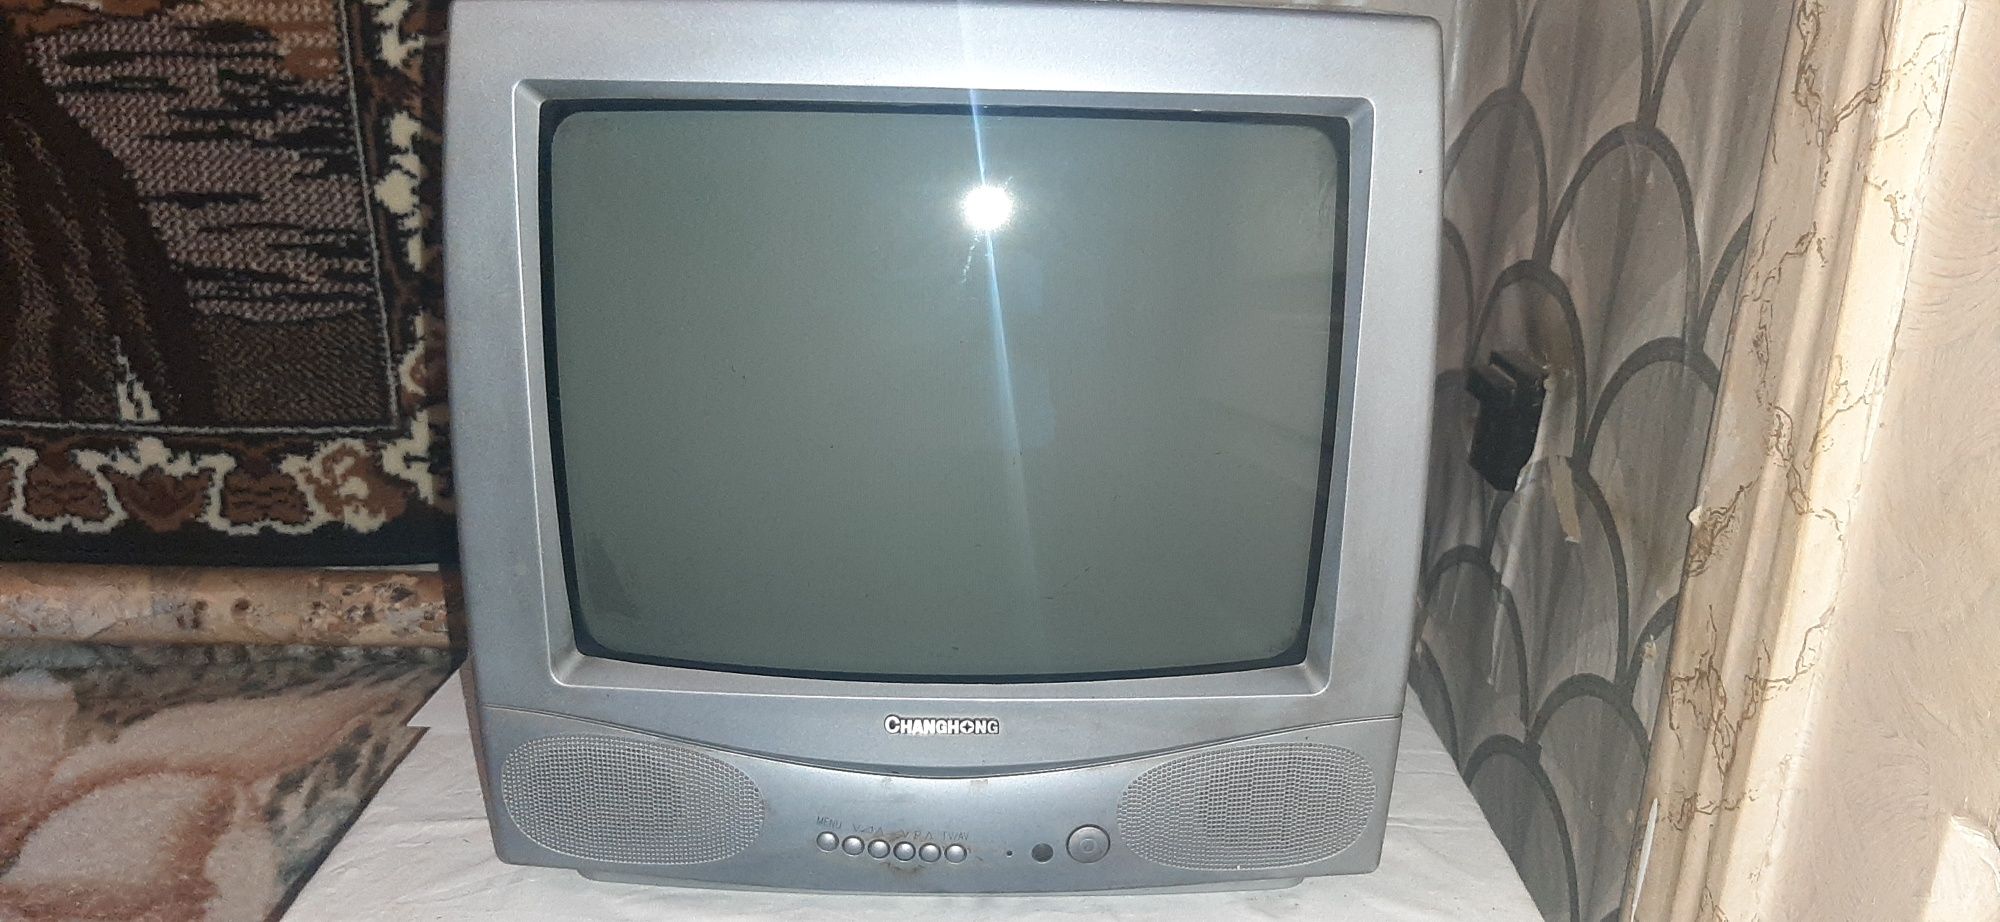 Телевизор Changchong рабочий диагональ 35 см